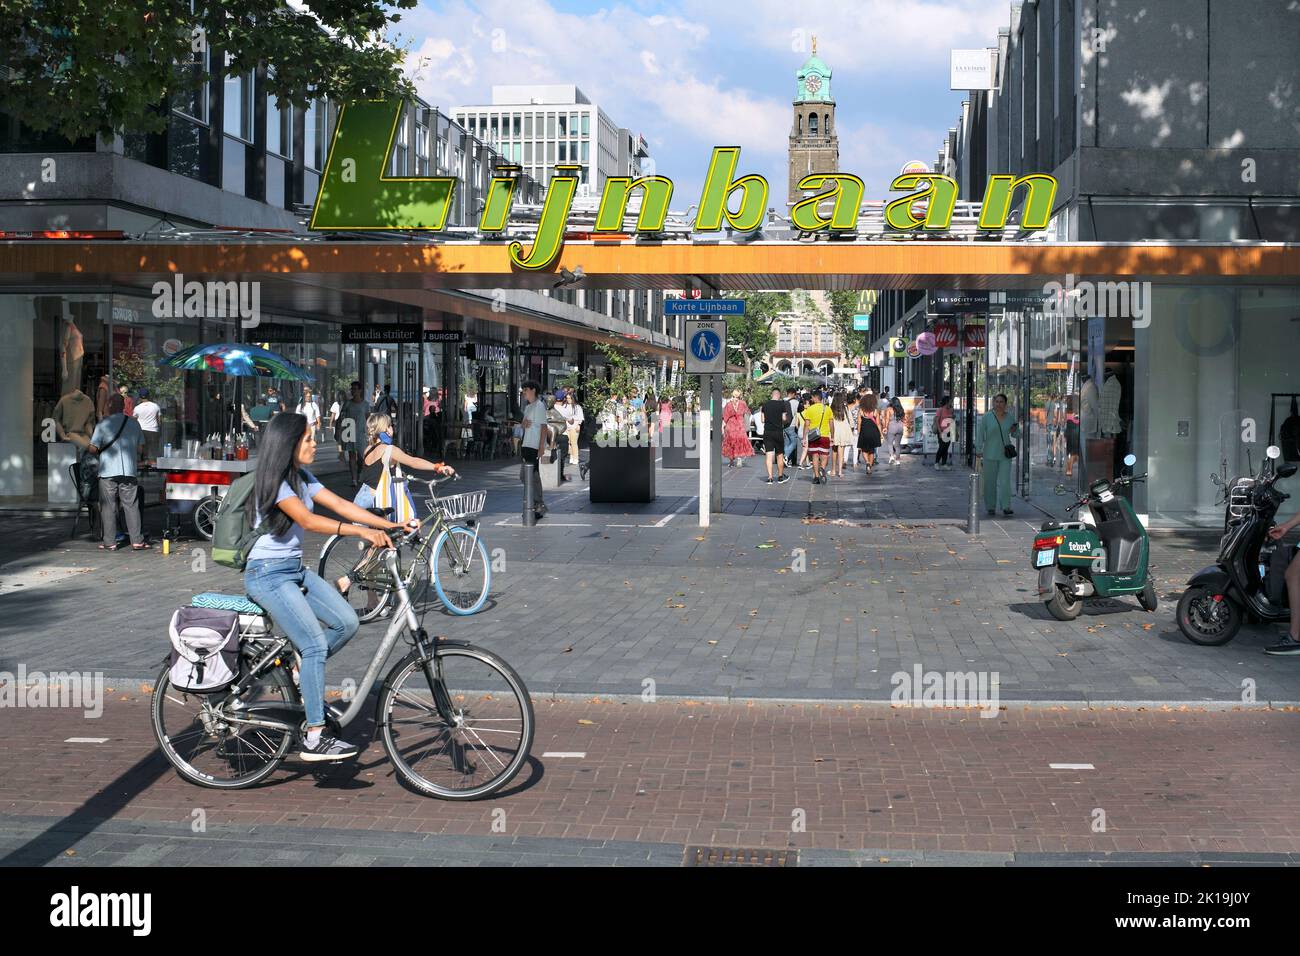 Carril bici junto a la zona comercial Lijnbaan en Rotterdam, Holanda. (Mirando hacia la torre del reloj del Ayuntamiento de Rotterdam). Foto de stock